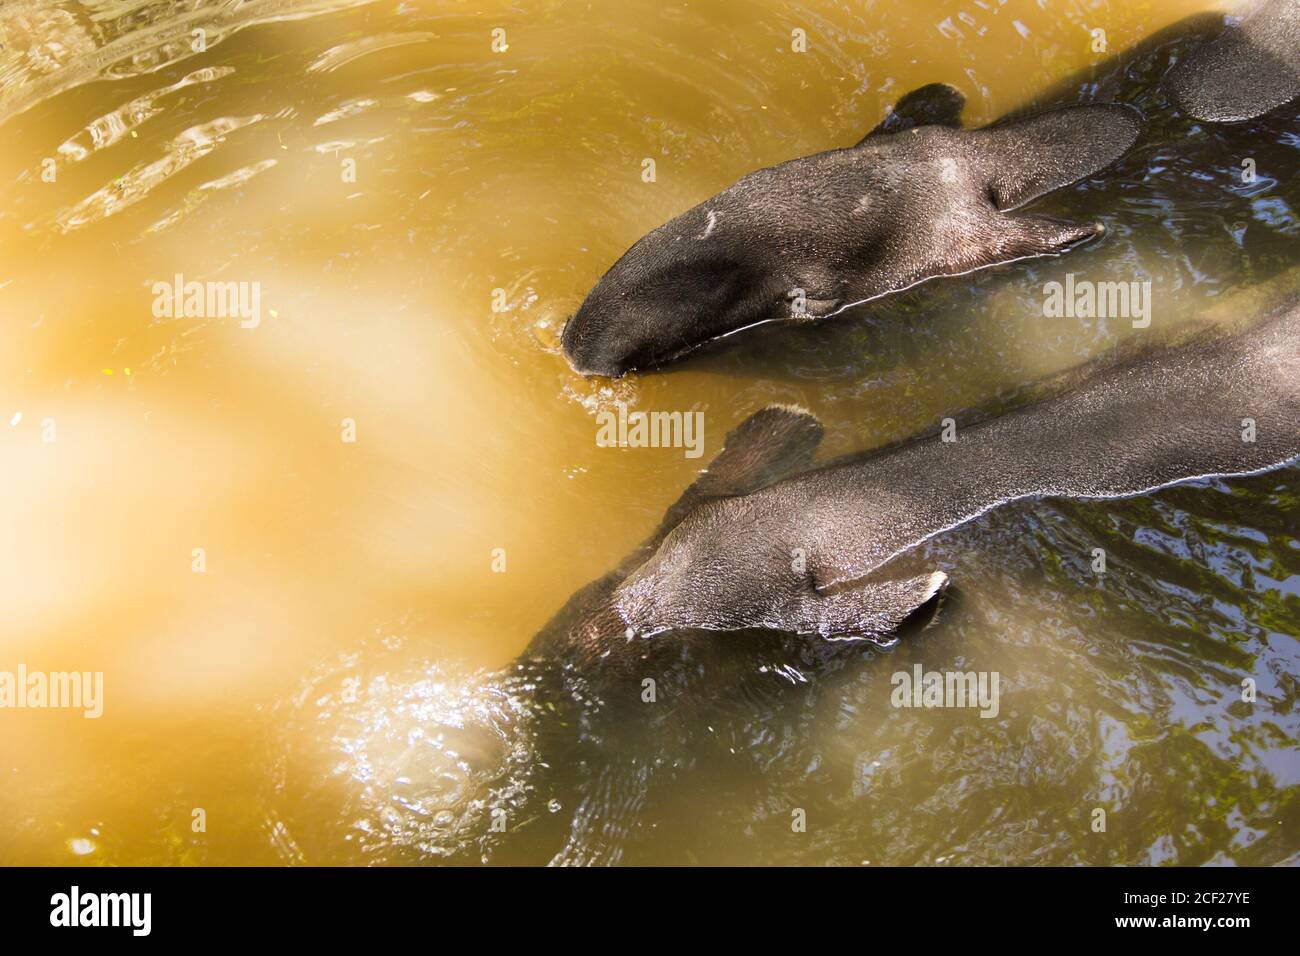 Malaiische Tapir Thailand. Sommer von Thailand Malayische Tapir in Wasser einweichen, um heiß zu entlasten. Stockfoto